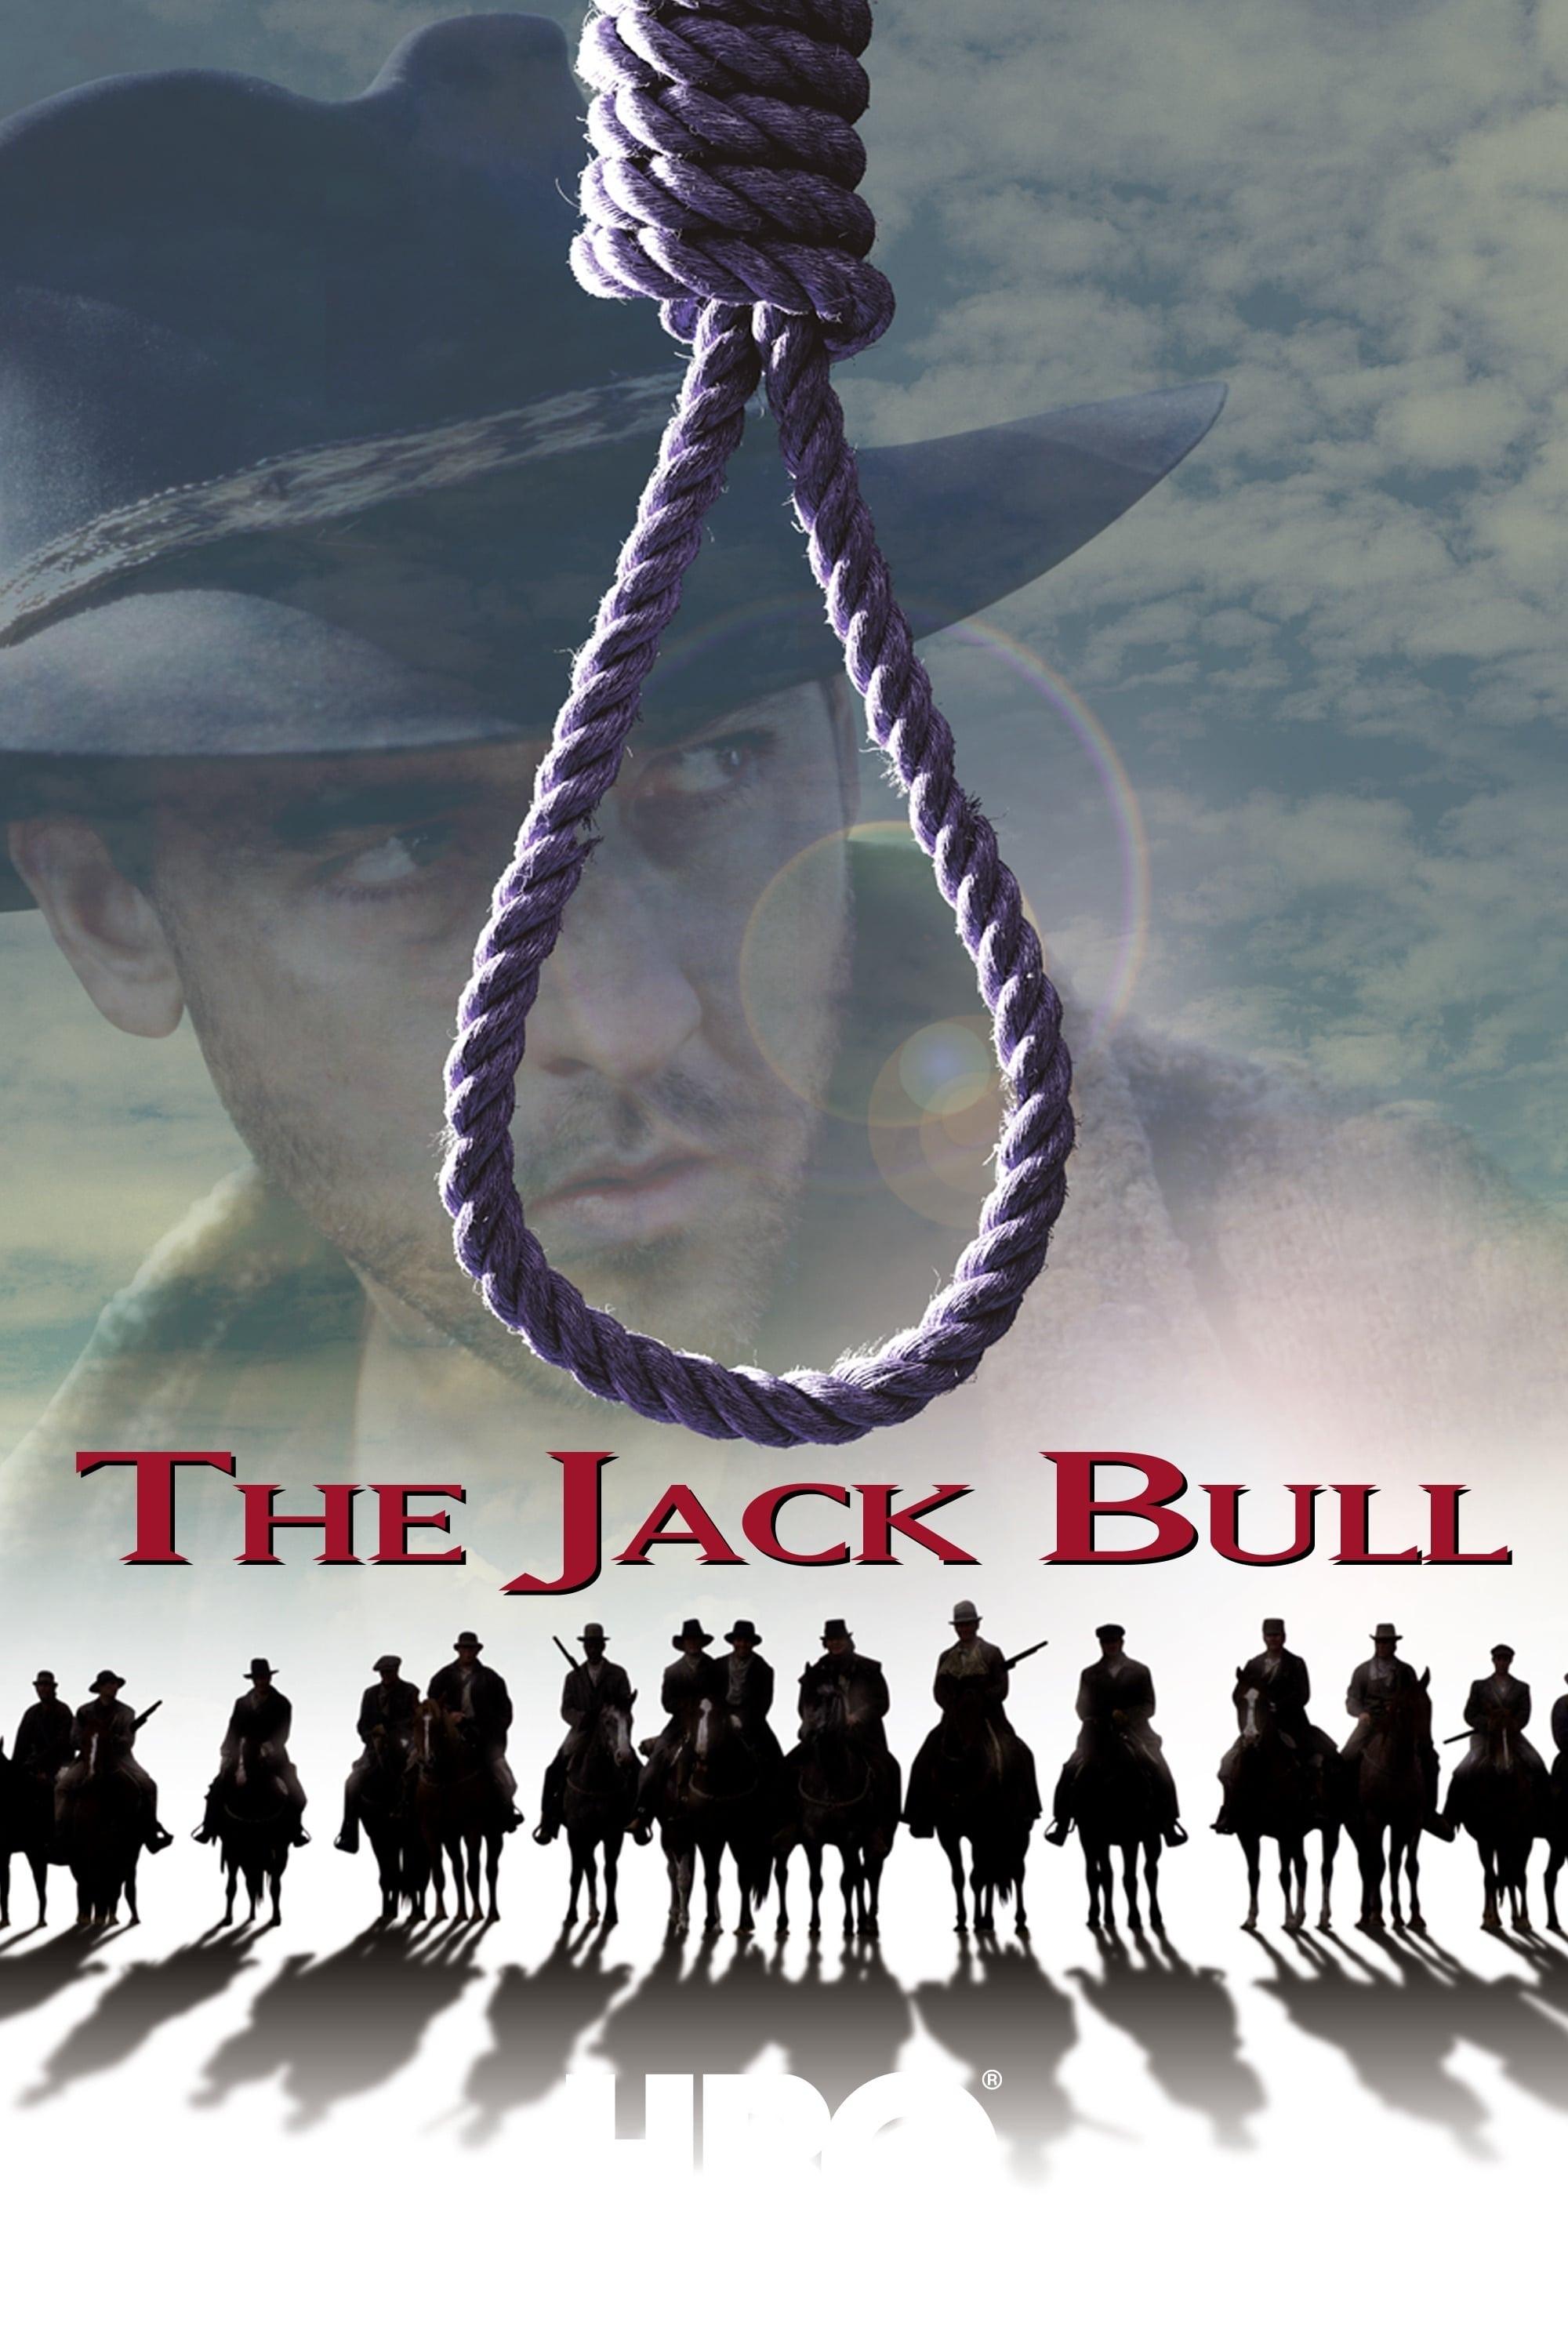 The Jack Bull poster